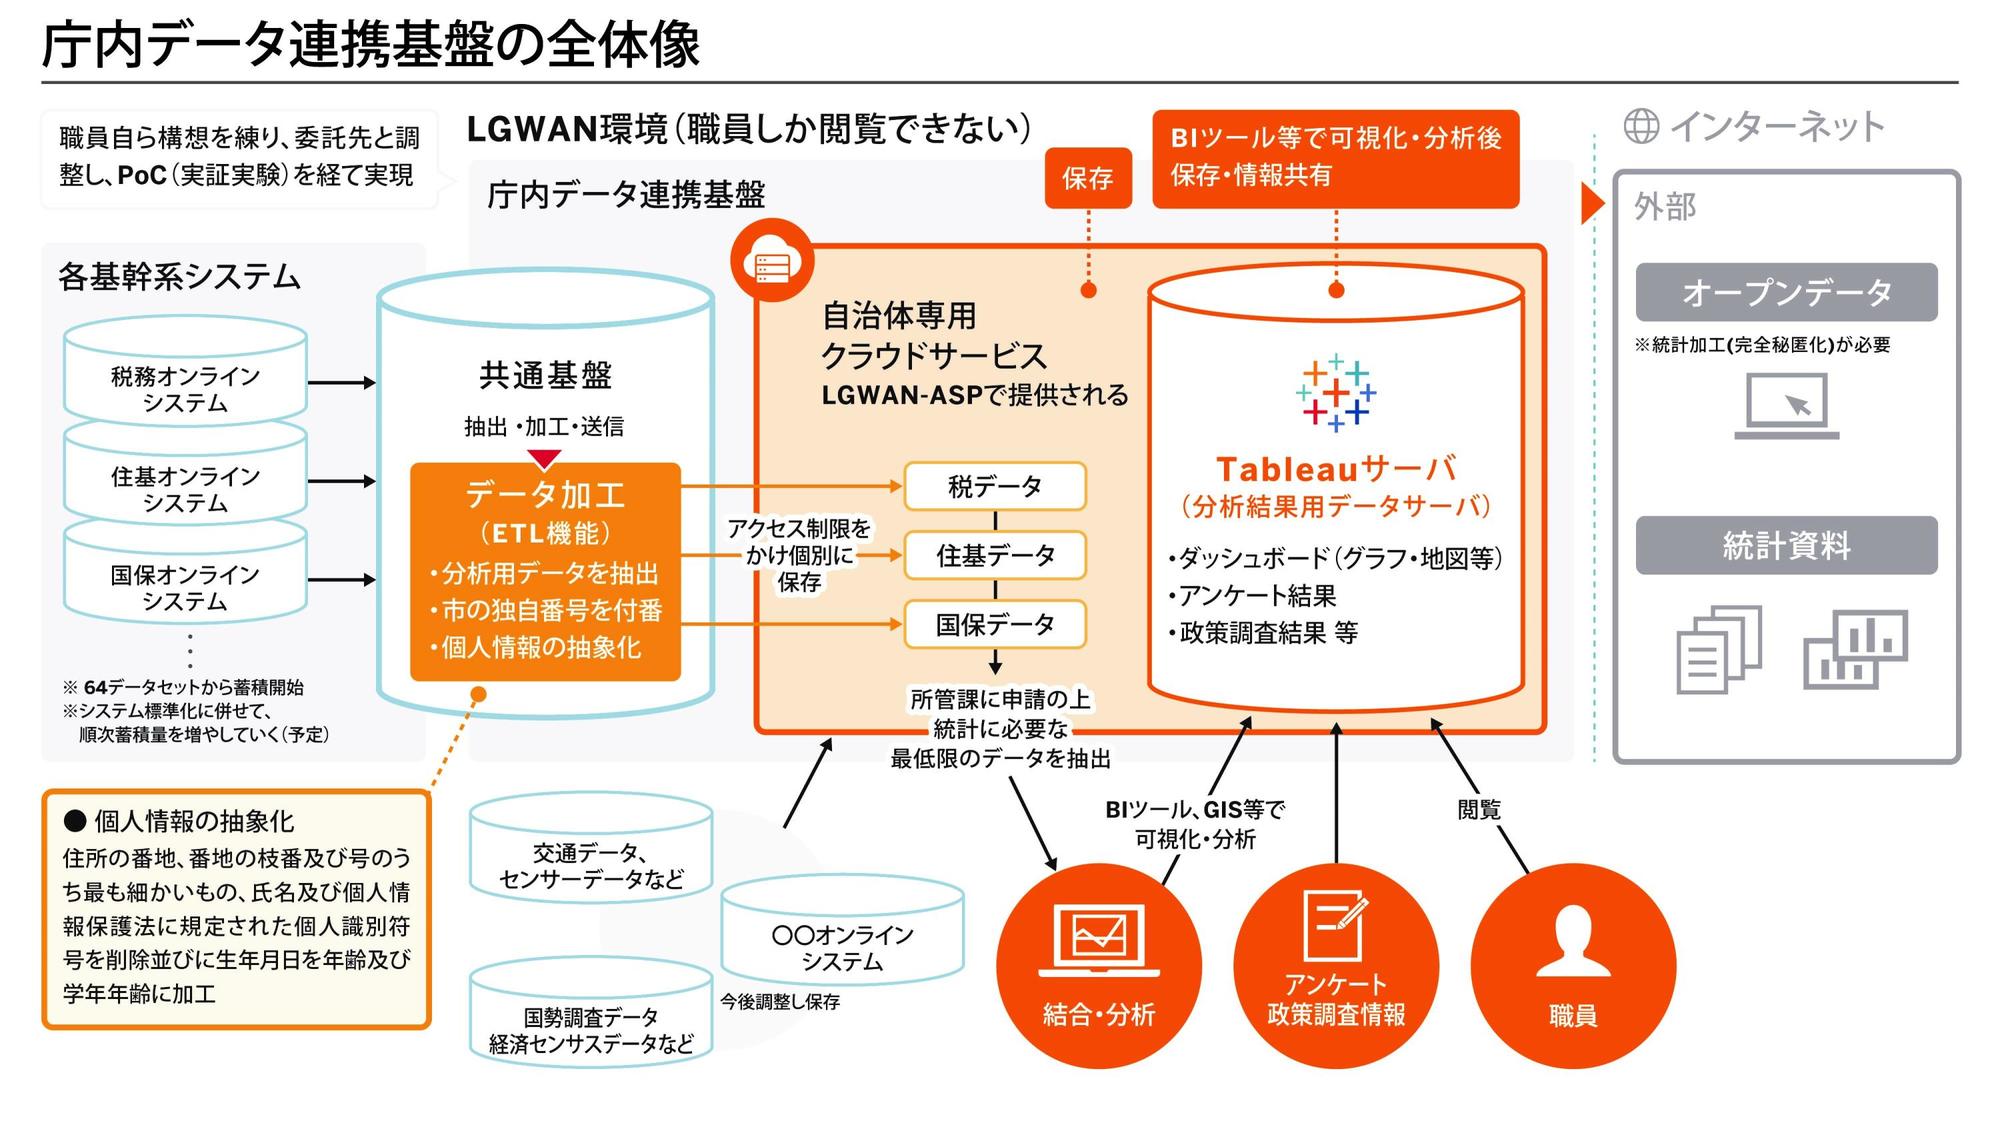 神戸市庁内データ連携基盤の全体像